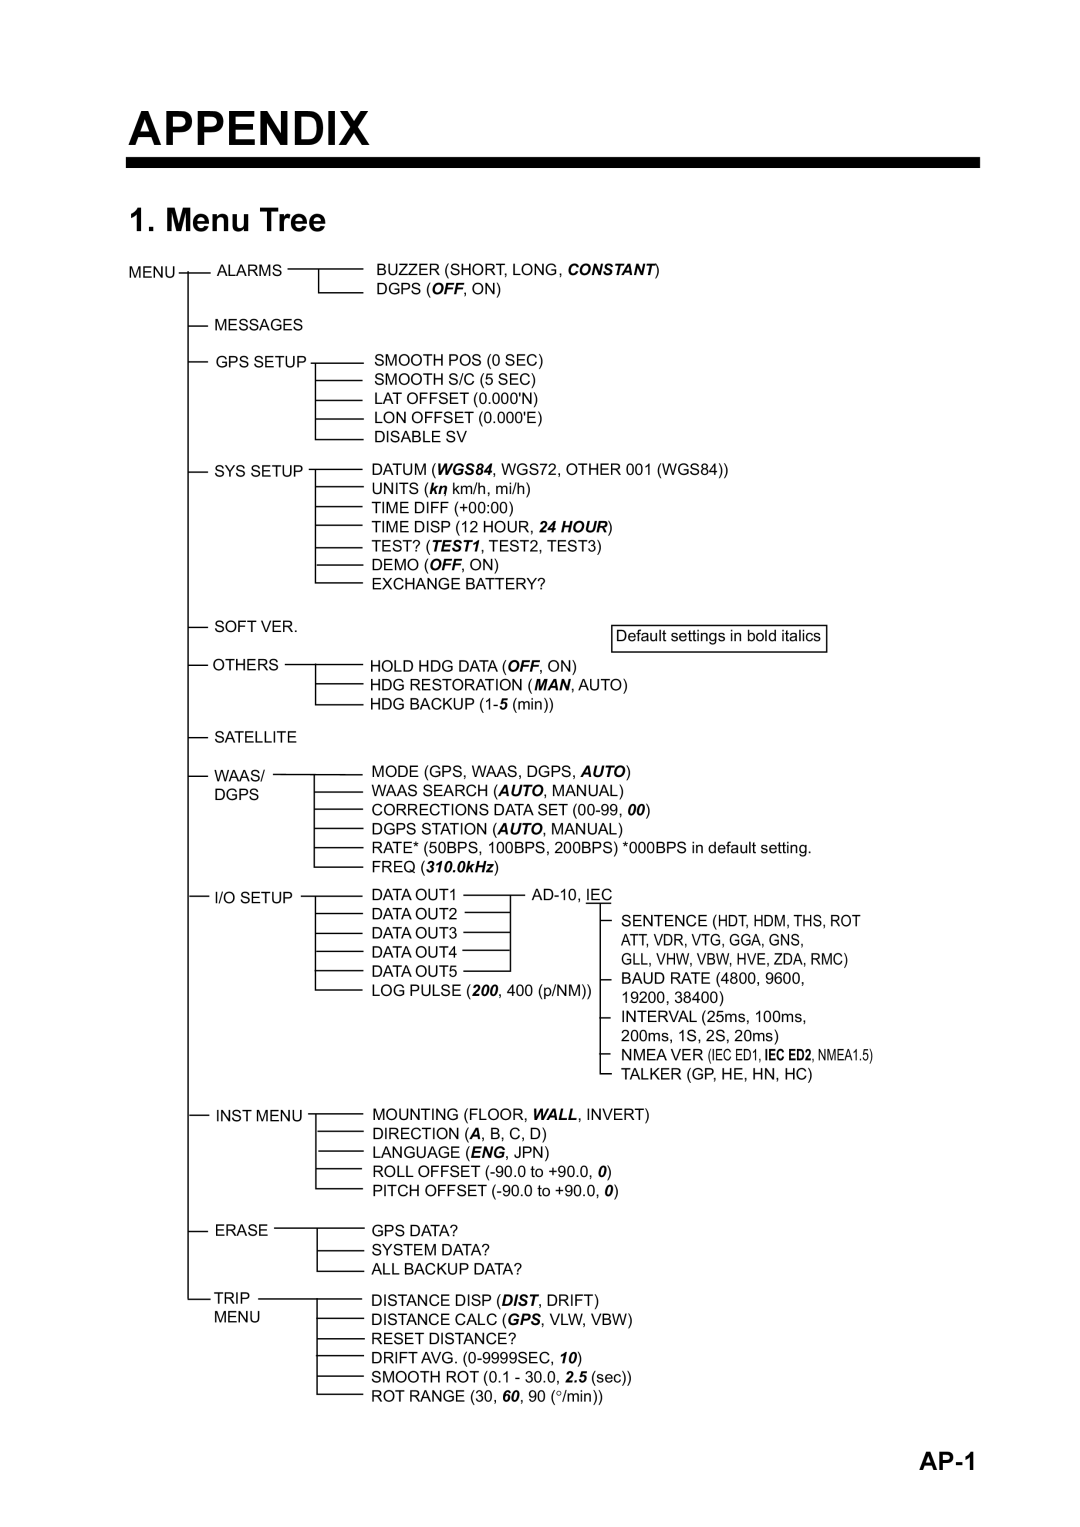 Furuno SC-110 manual Appendix, Menu Tree, AP-1 